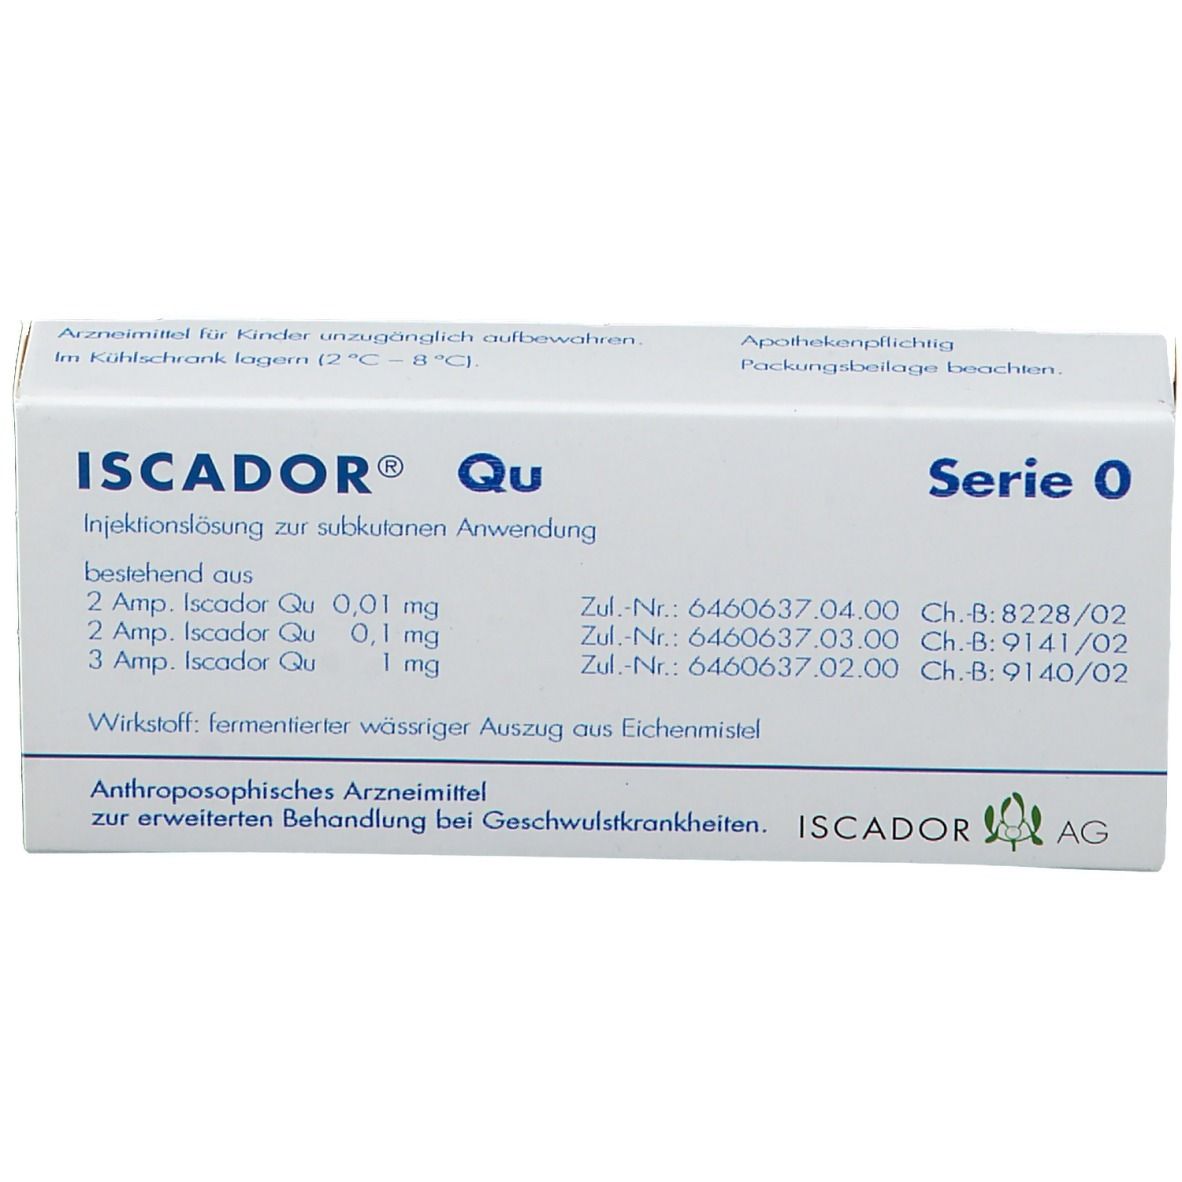 ISCADOR® Qu Serie 0